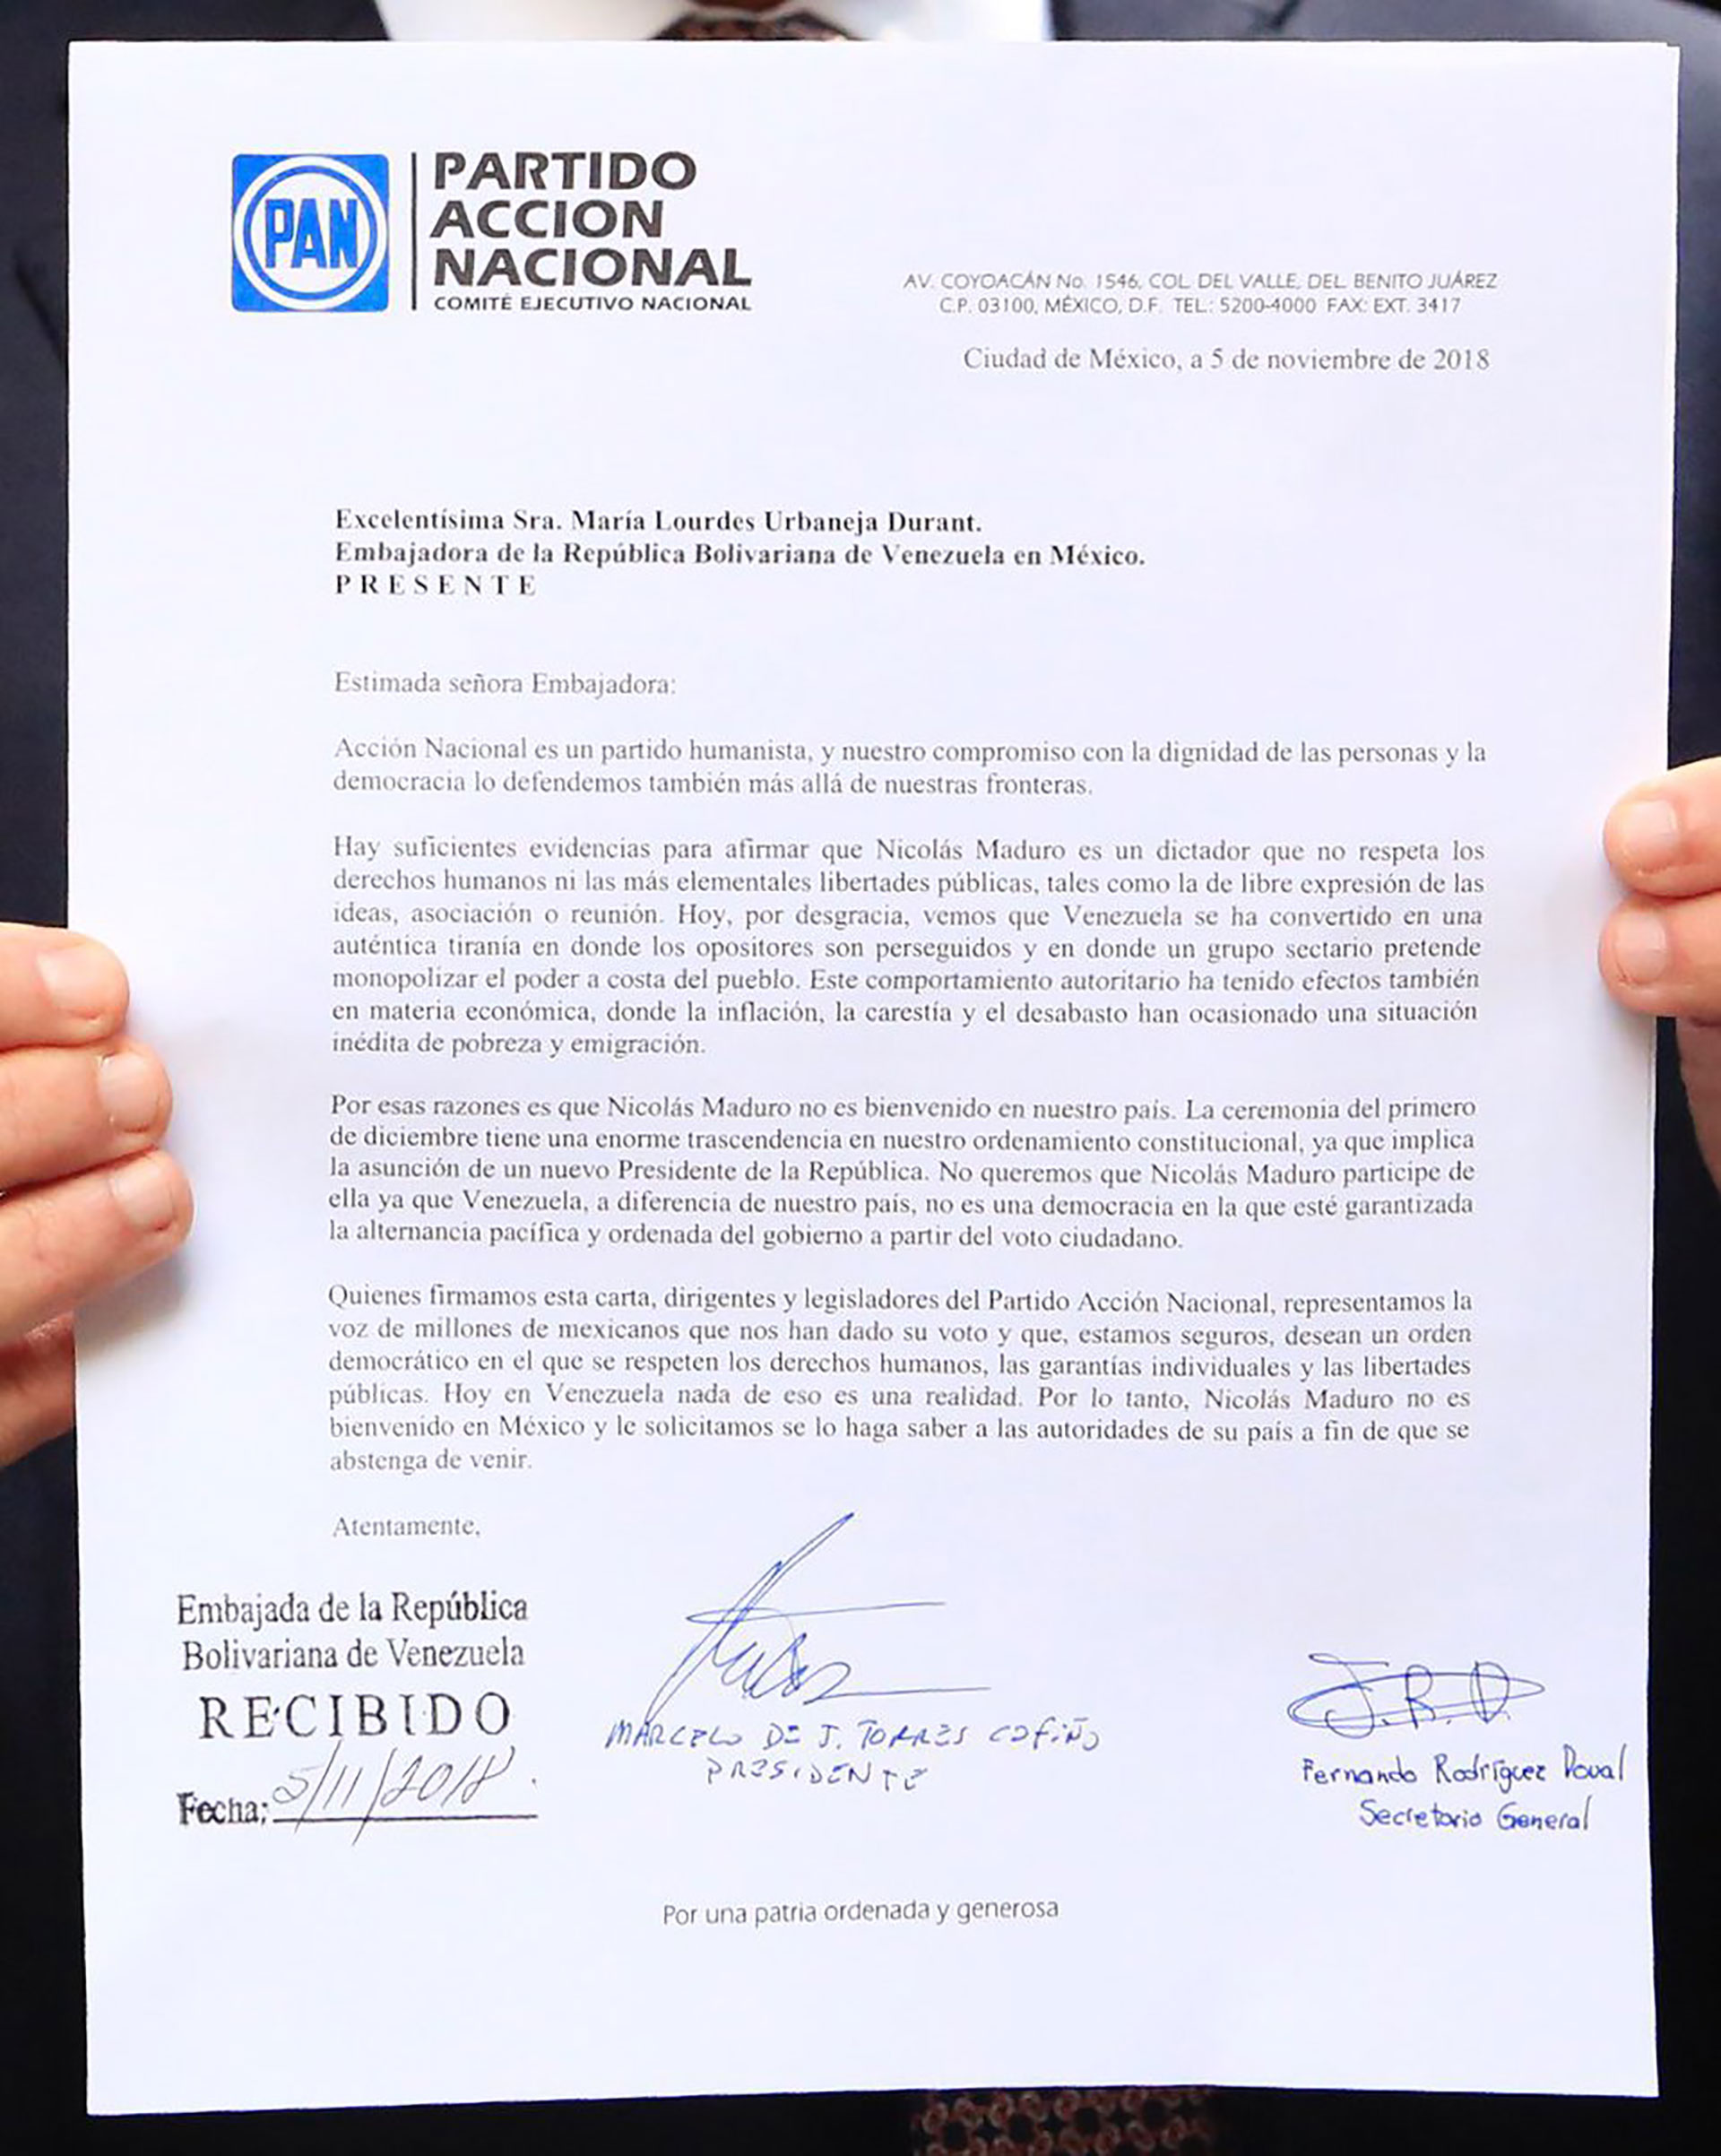 El PAN señala en el escrito el “comportamiento autoritario” del régimen bolivariano (Foto: @marcelotorresc)